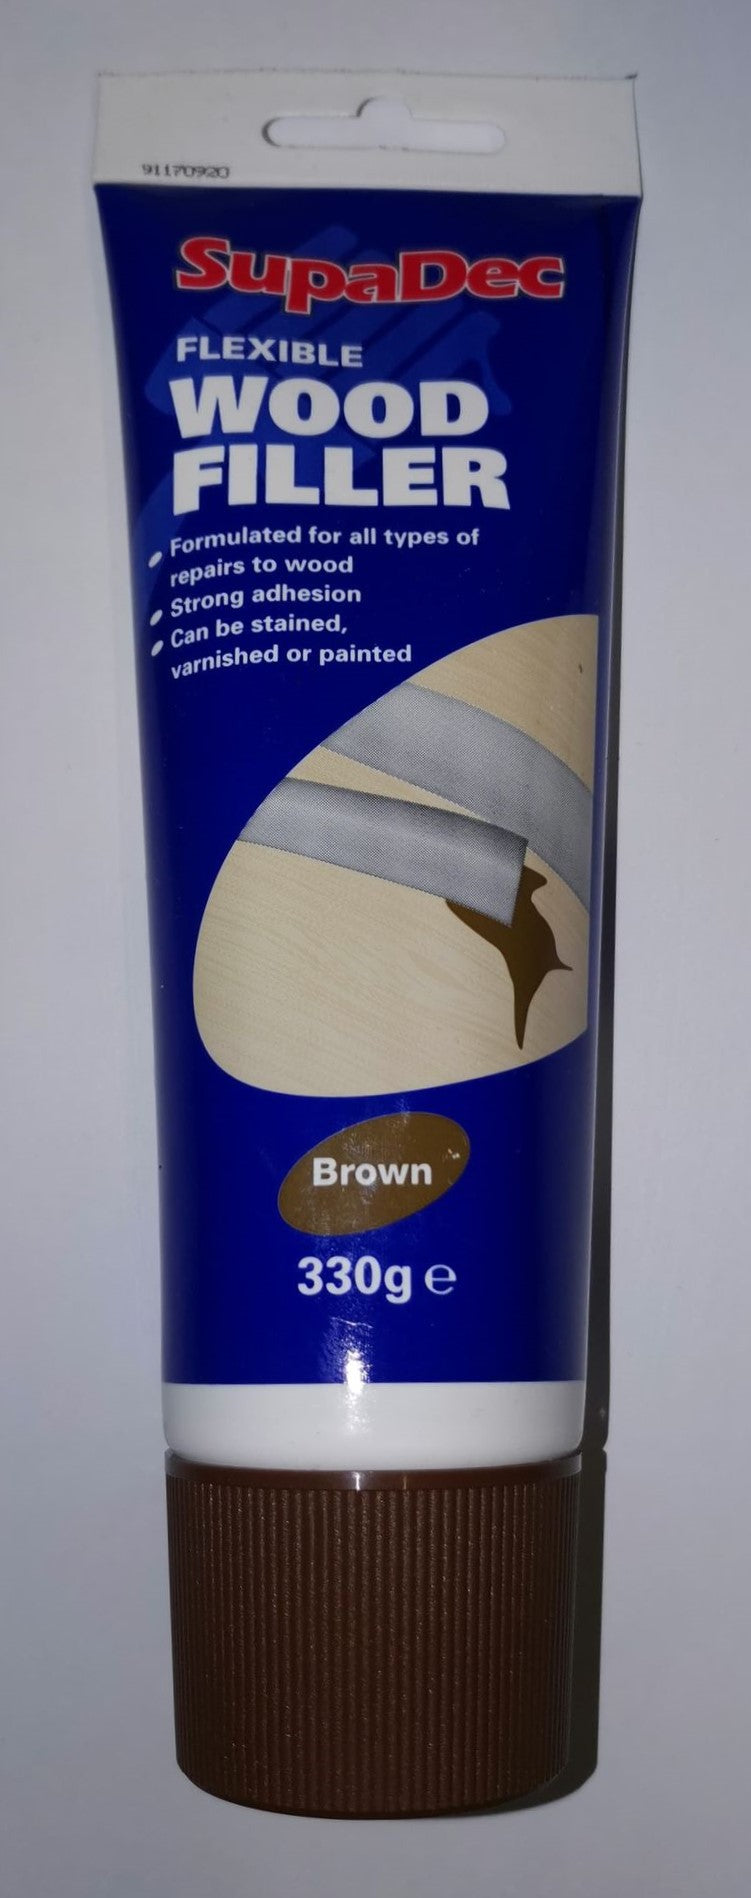 Flexible Wood Filler - 330g - White & Brown